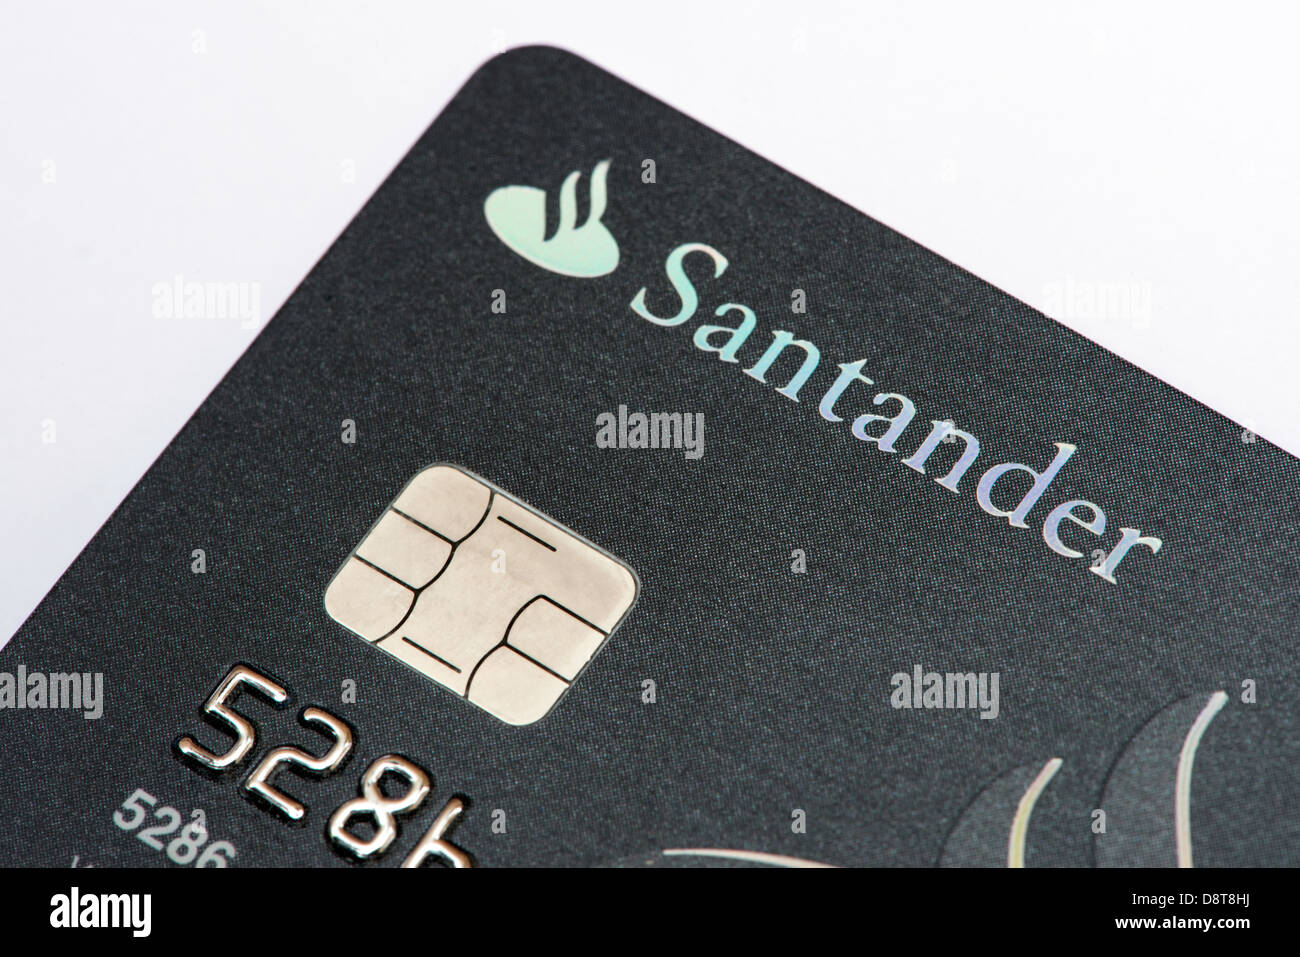 A close up of a Santander bank credit card Stock Photo